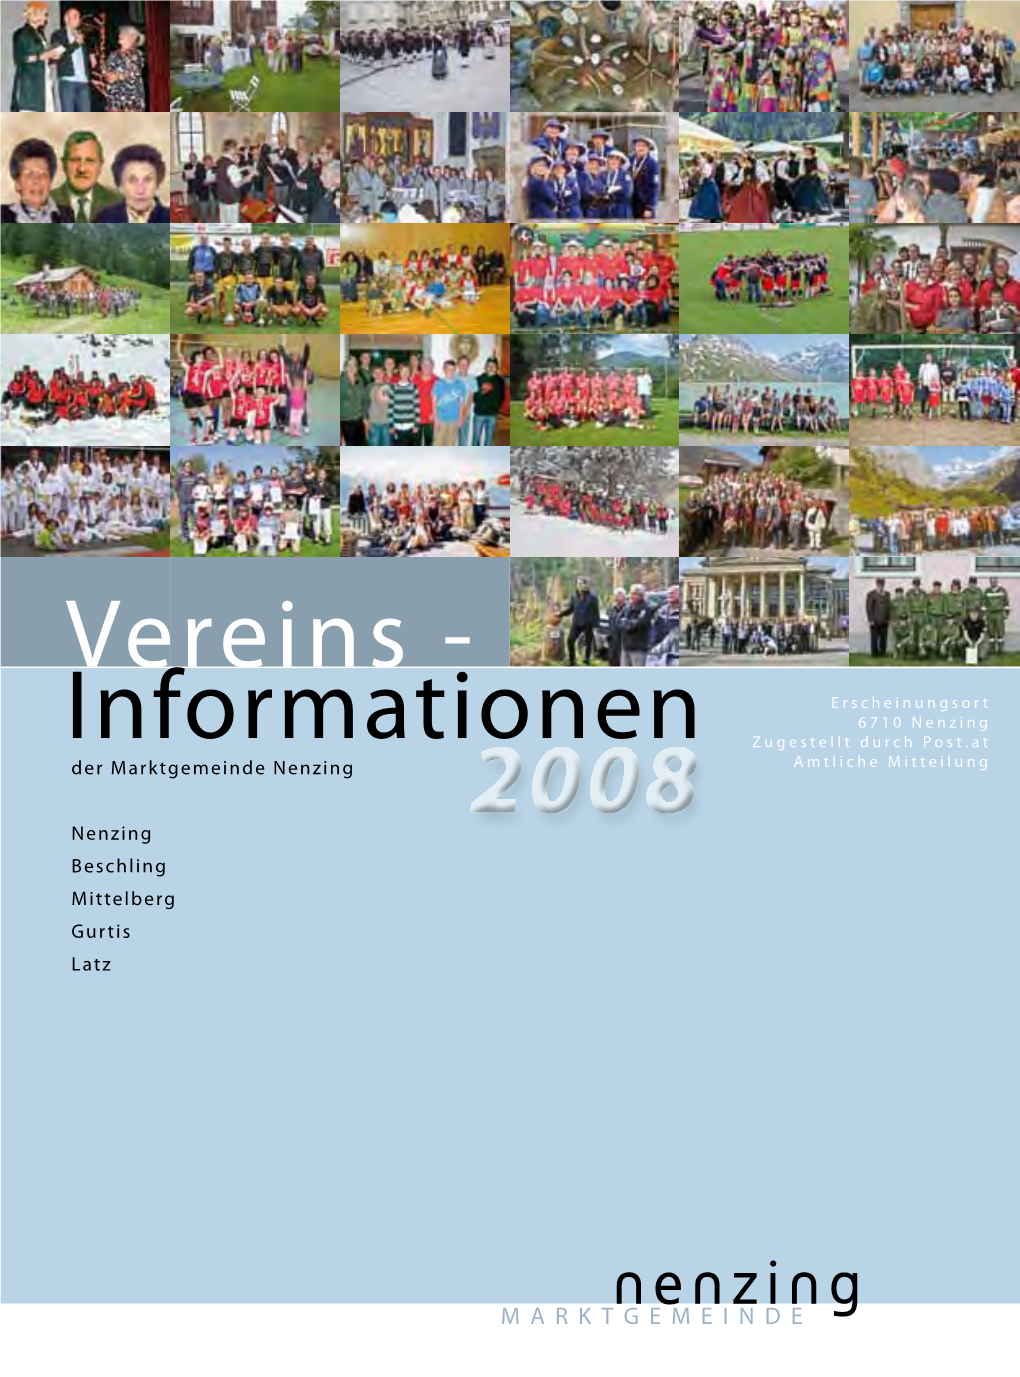 Vereins-Informationen Der Marktgemeinde Nenzing 2008 43 Wortlaut Des Vereines Lt